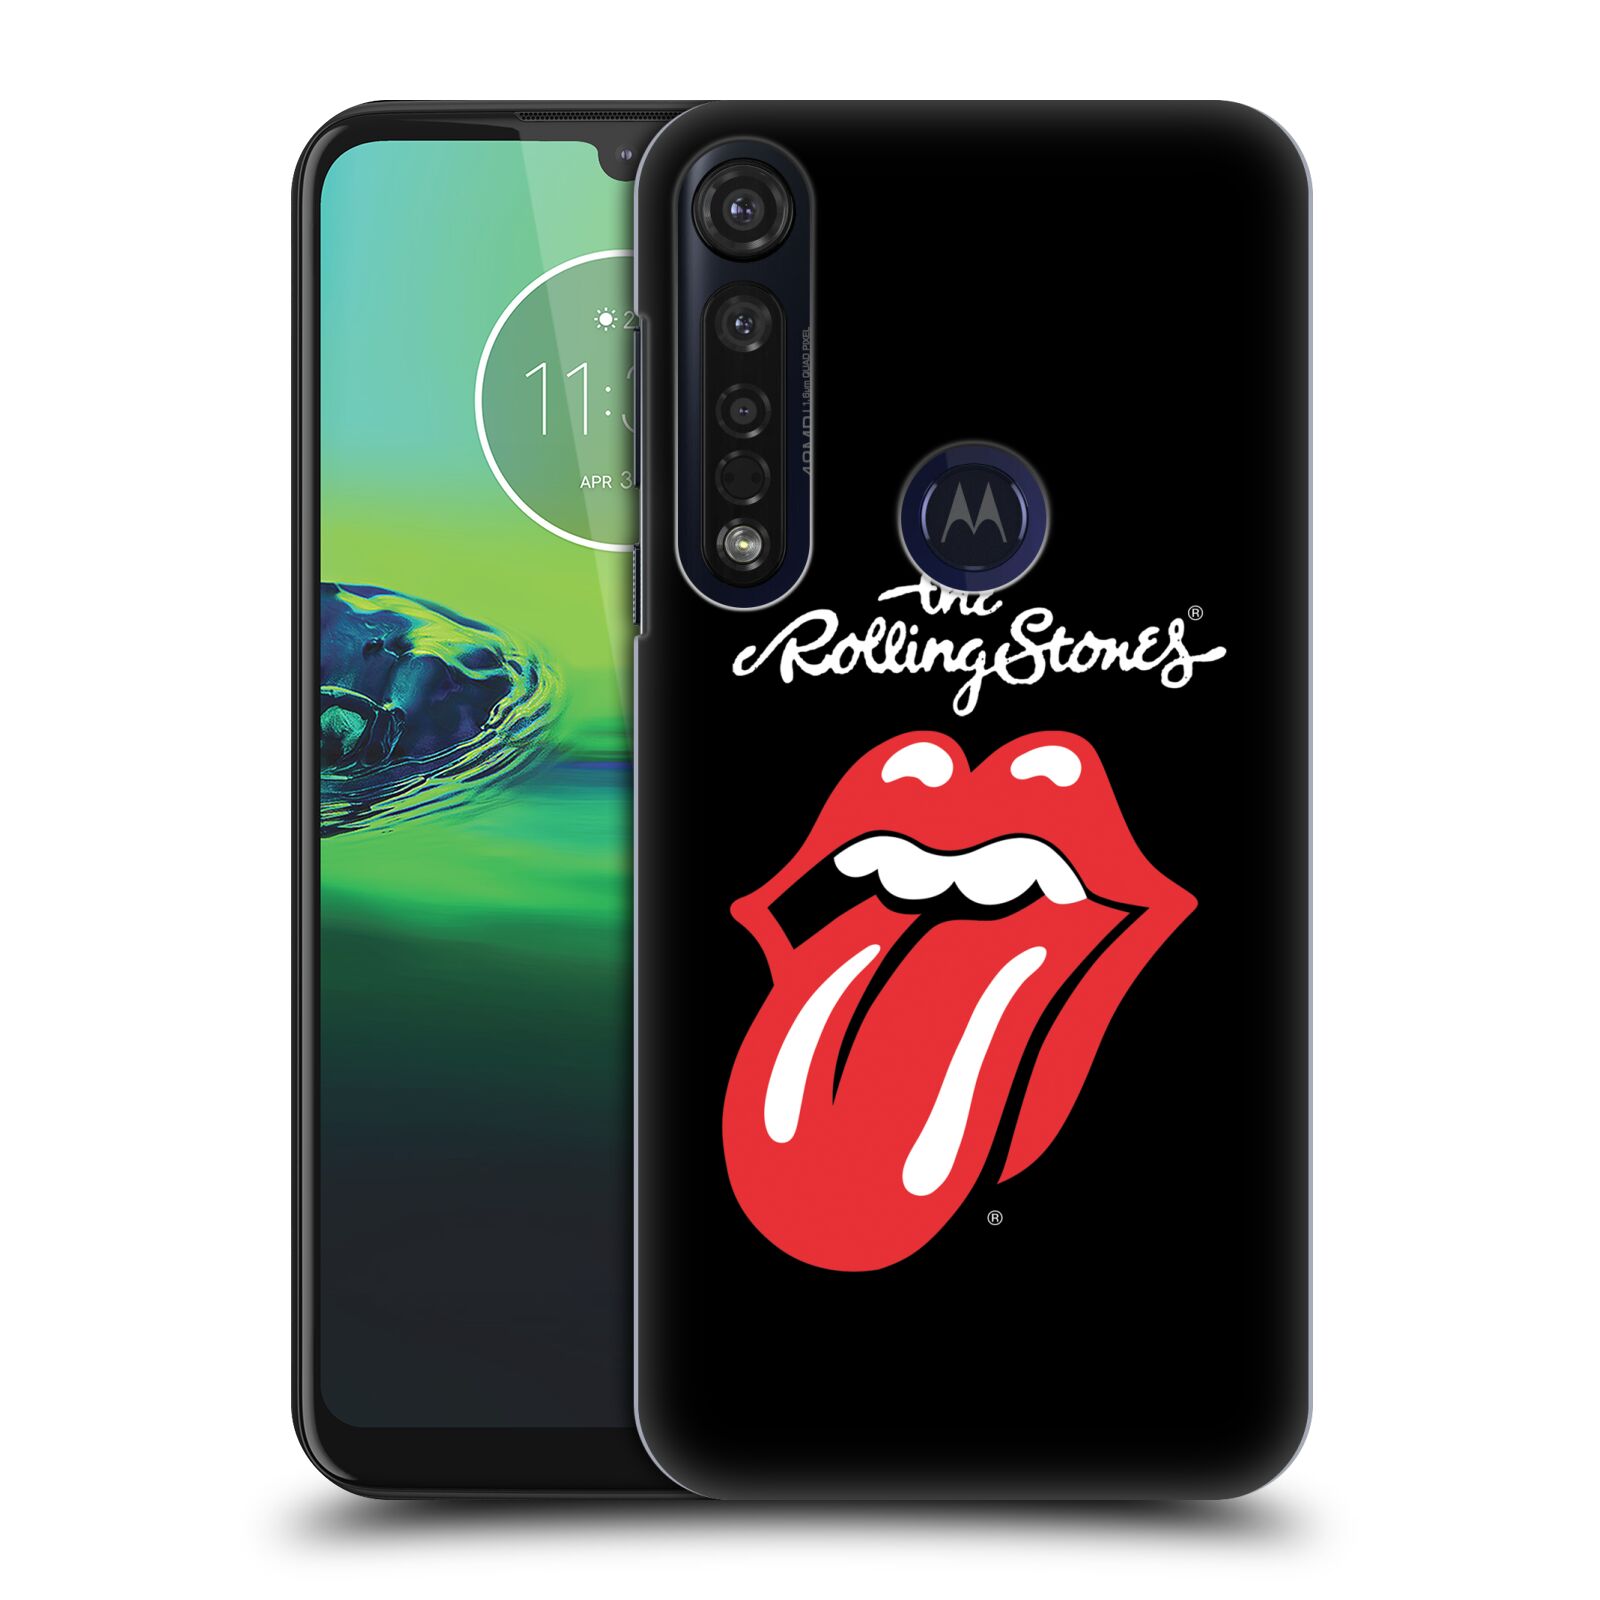 Pouzdro na mobil Motorola Moto G8 PLUS - HEAD CASE - rocková skupina Rolling Stones znak černá a červená